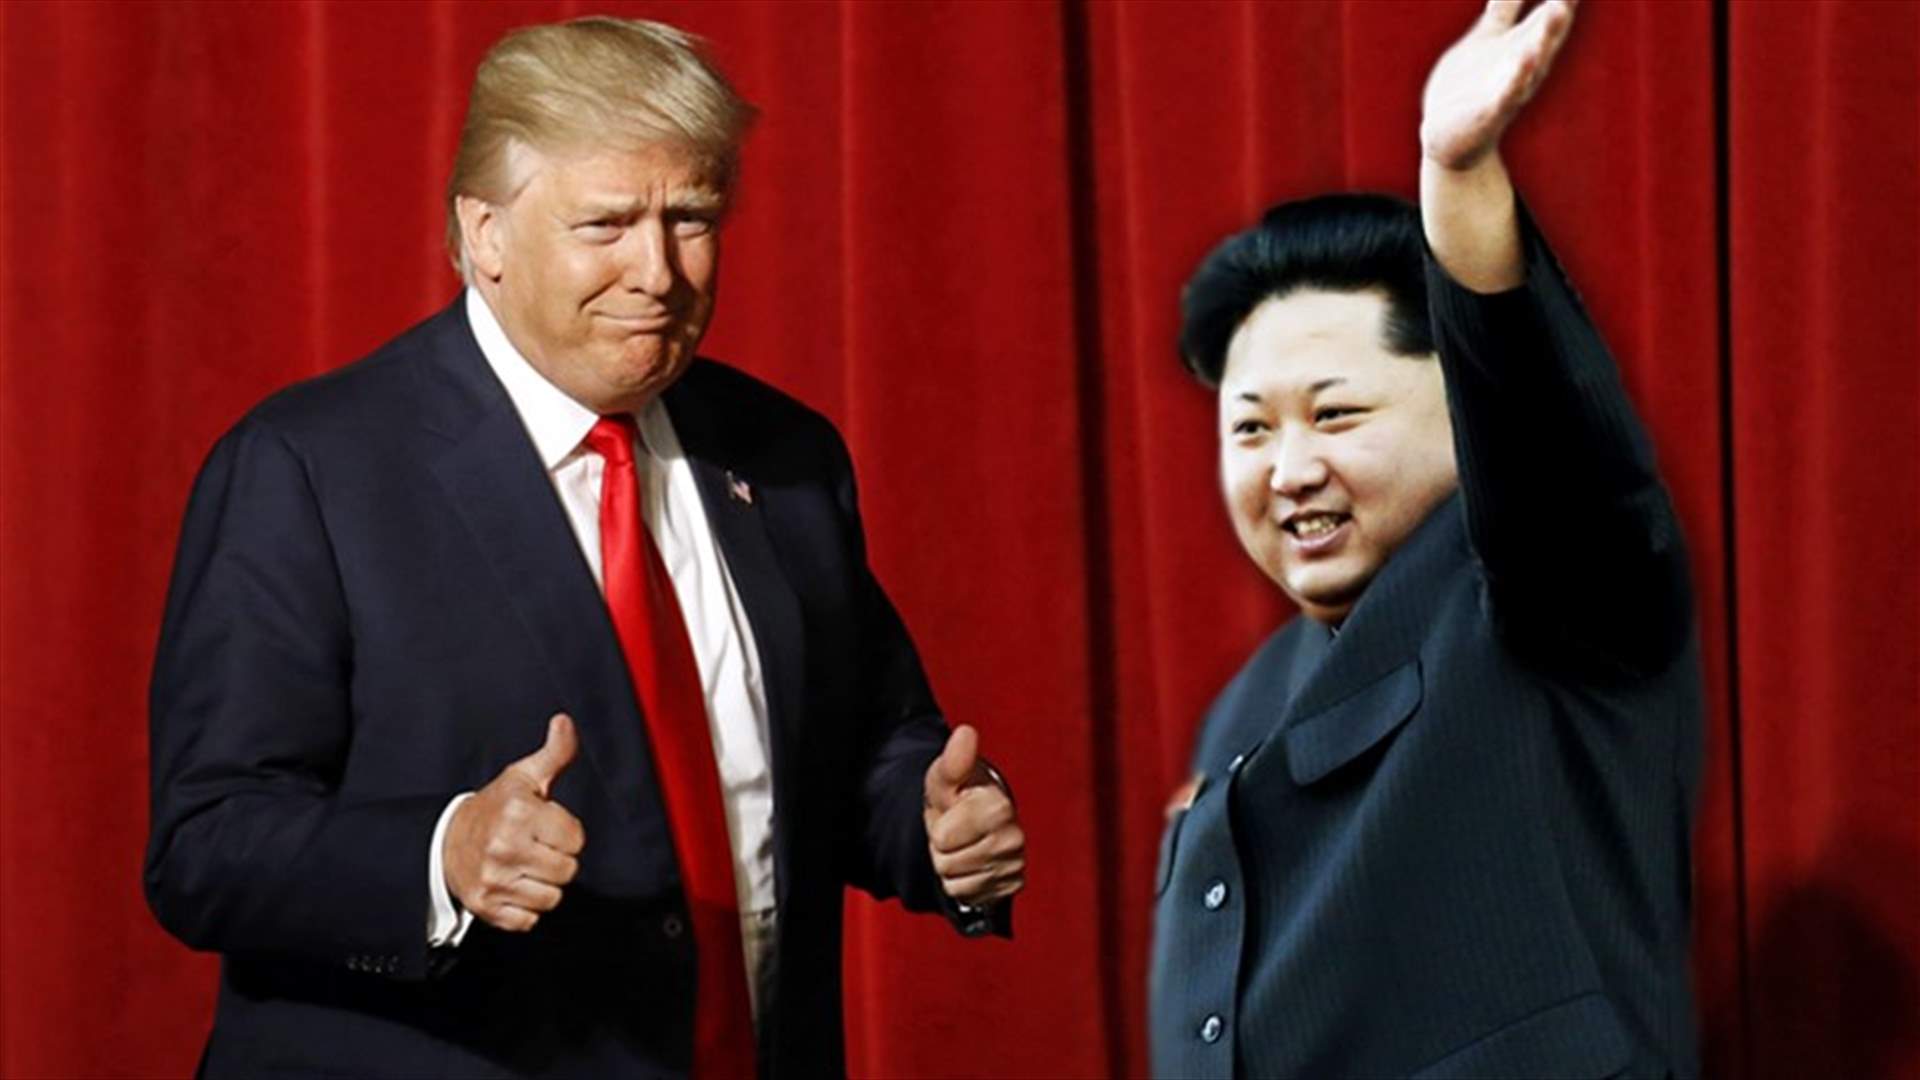 كوريا الشمالية: كلينتون مغفلة... وترامب حكيم